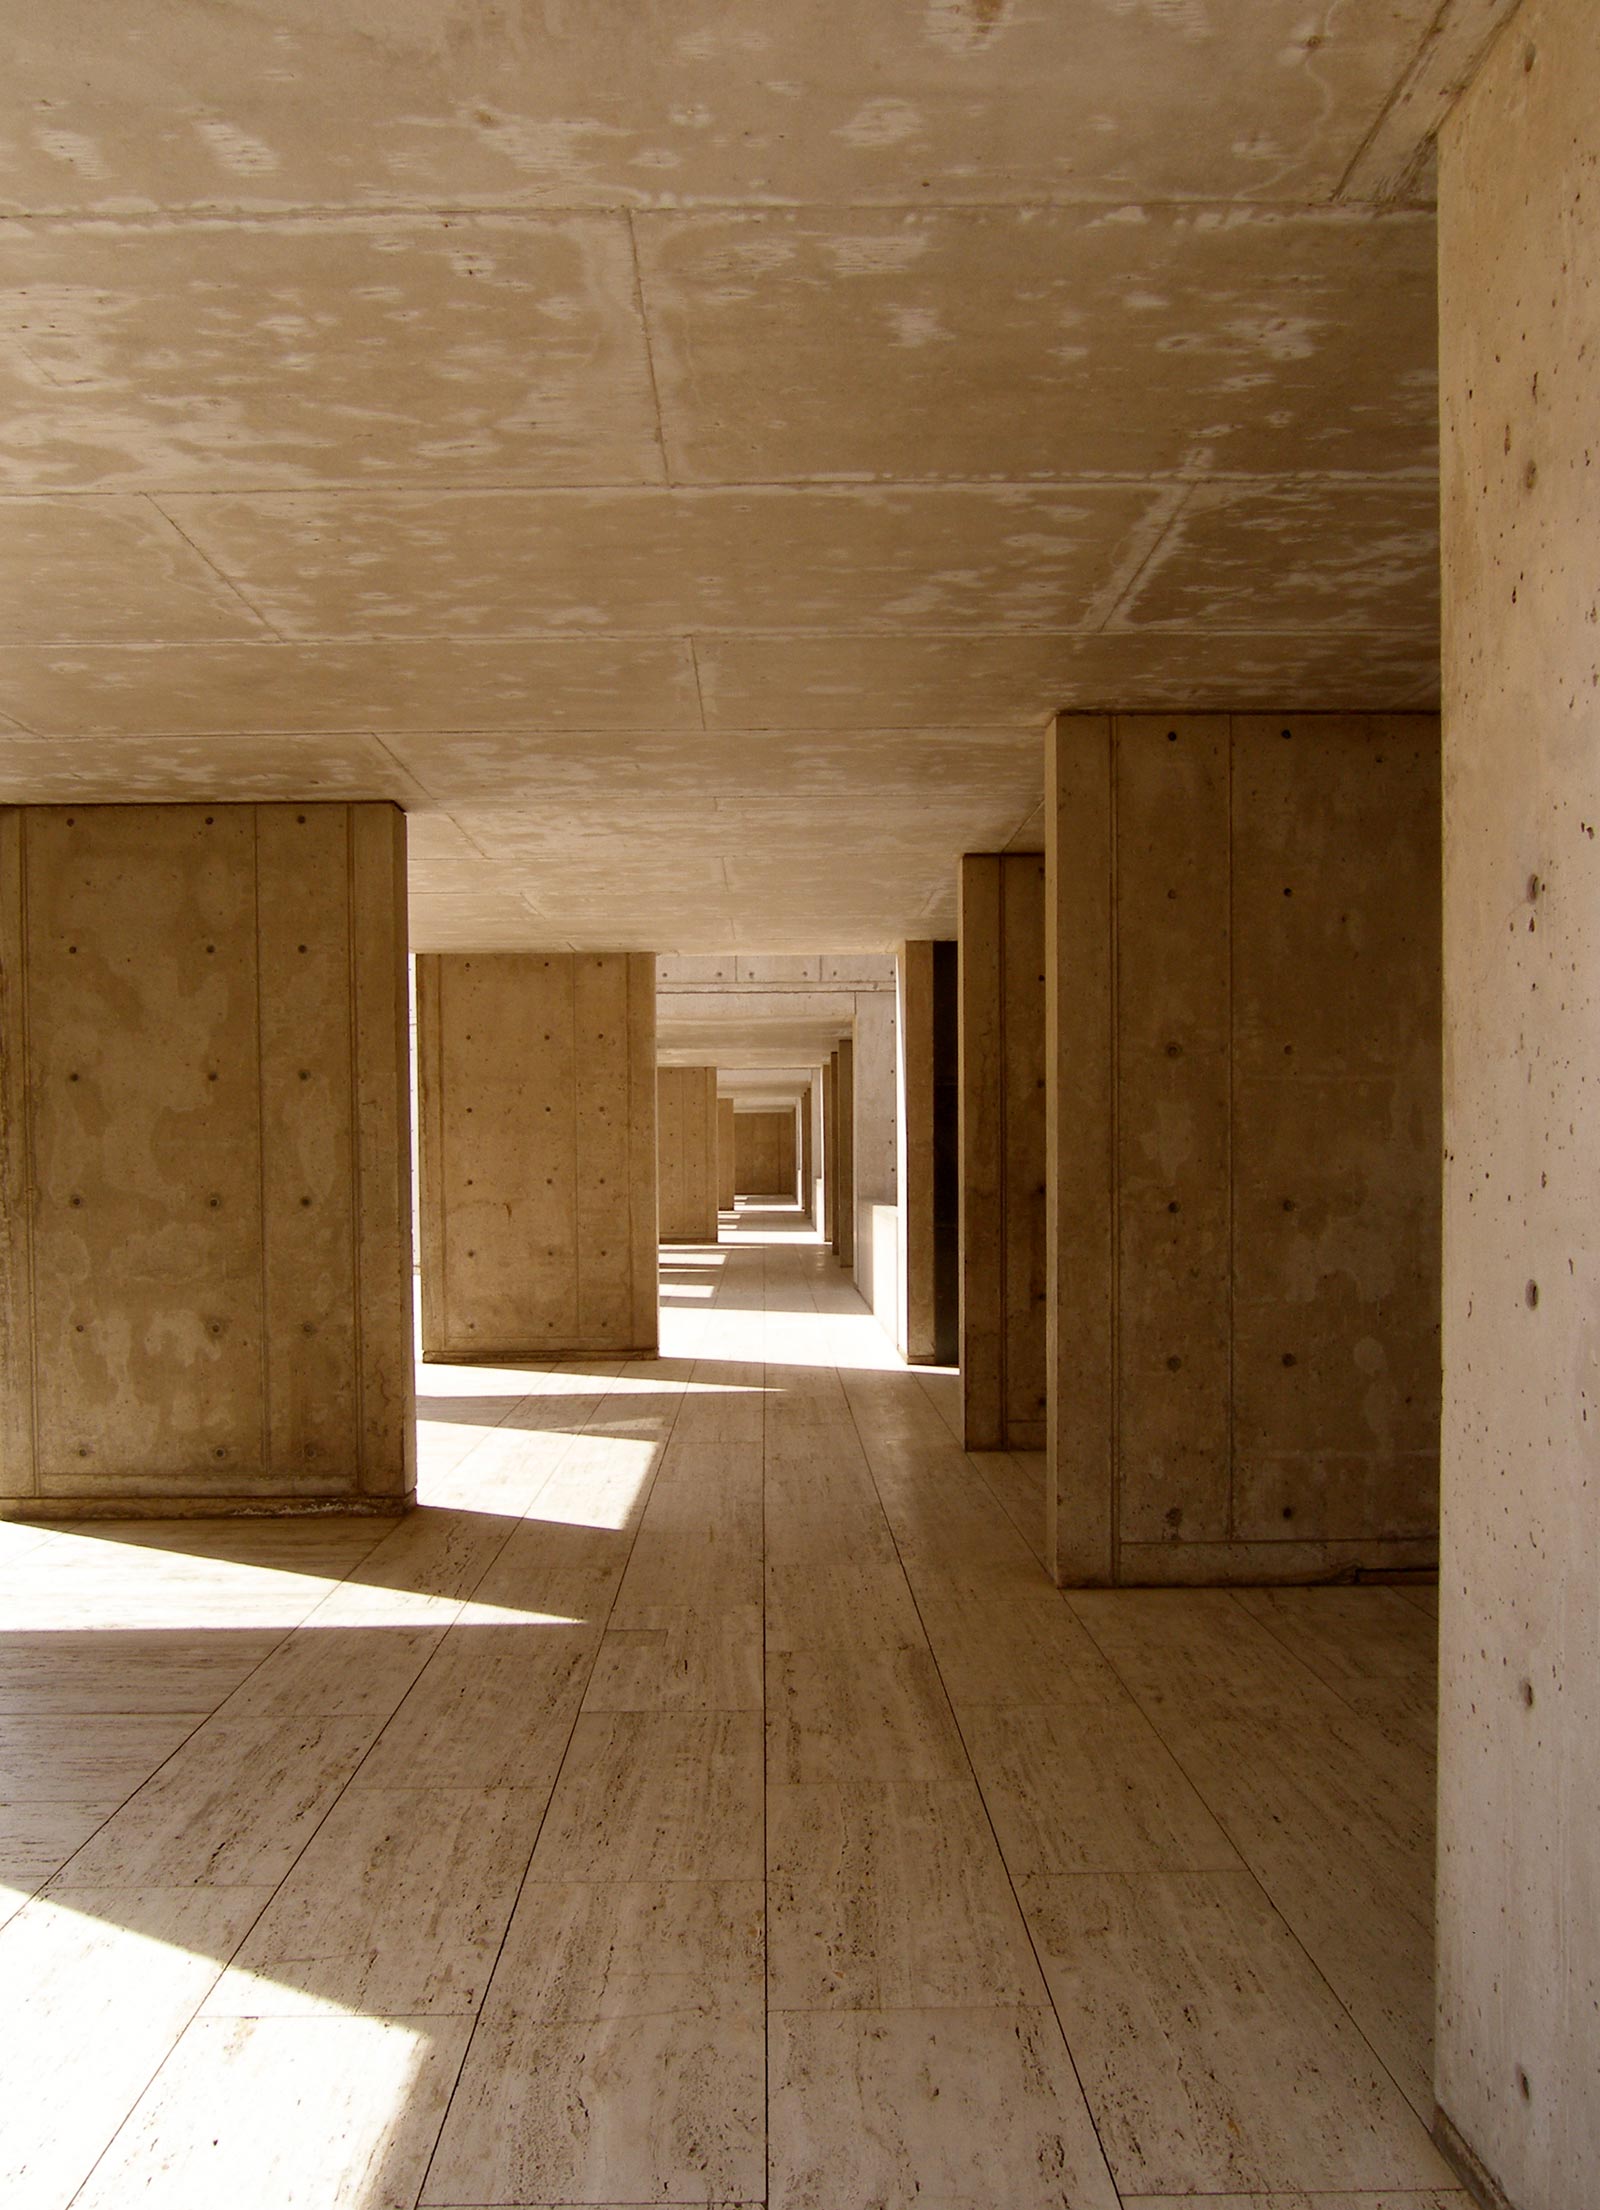 Salk Institute, La Jolla - Louis Kahn, Louis Kahn's Salk I…